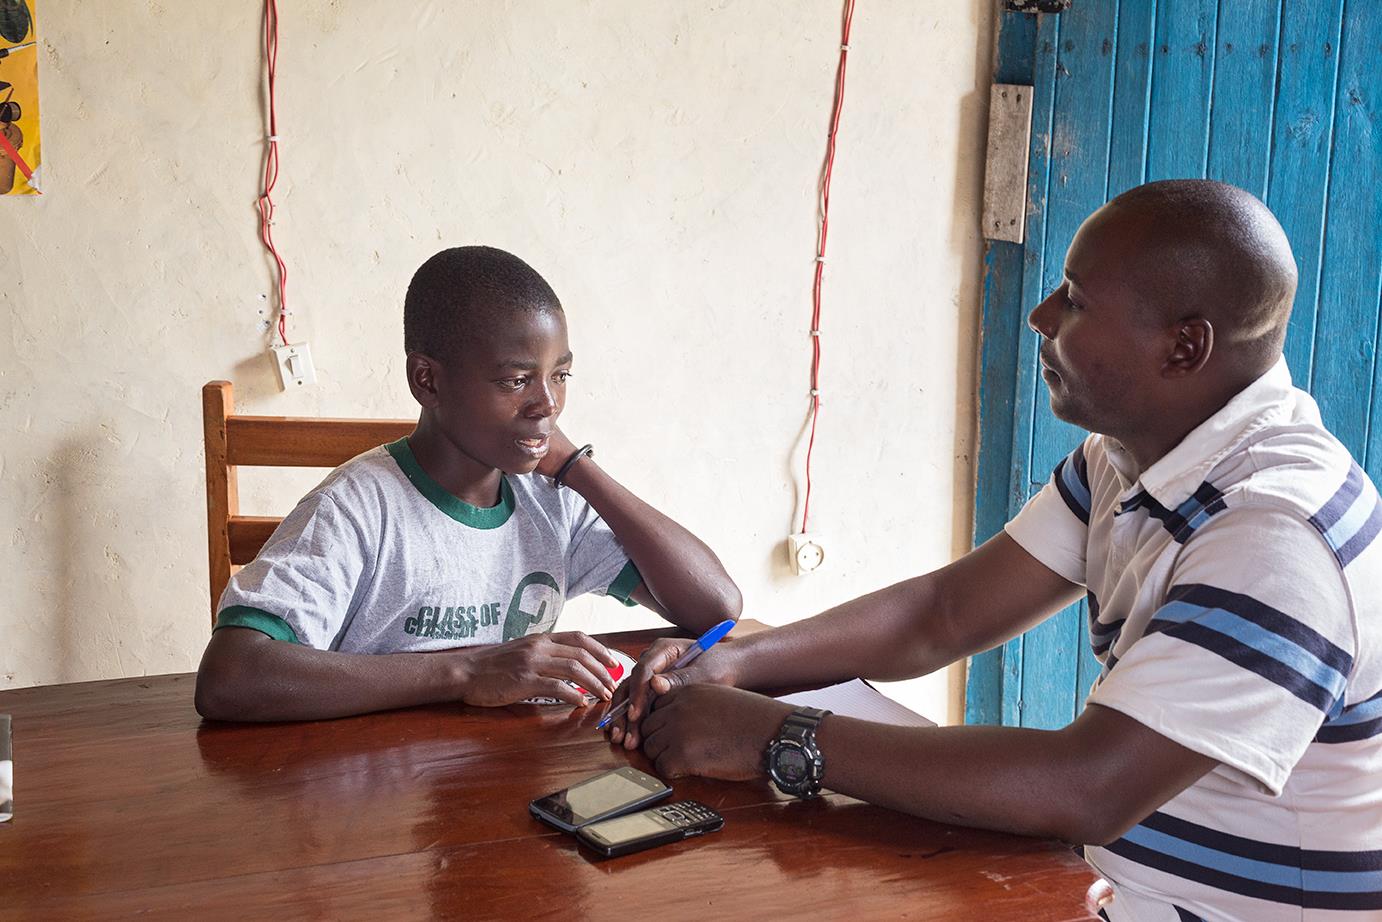 Psychologe Pascal Luhiriri im Gespräch mit einem Ex-Kindersoldaten